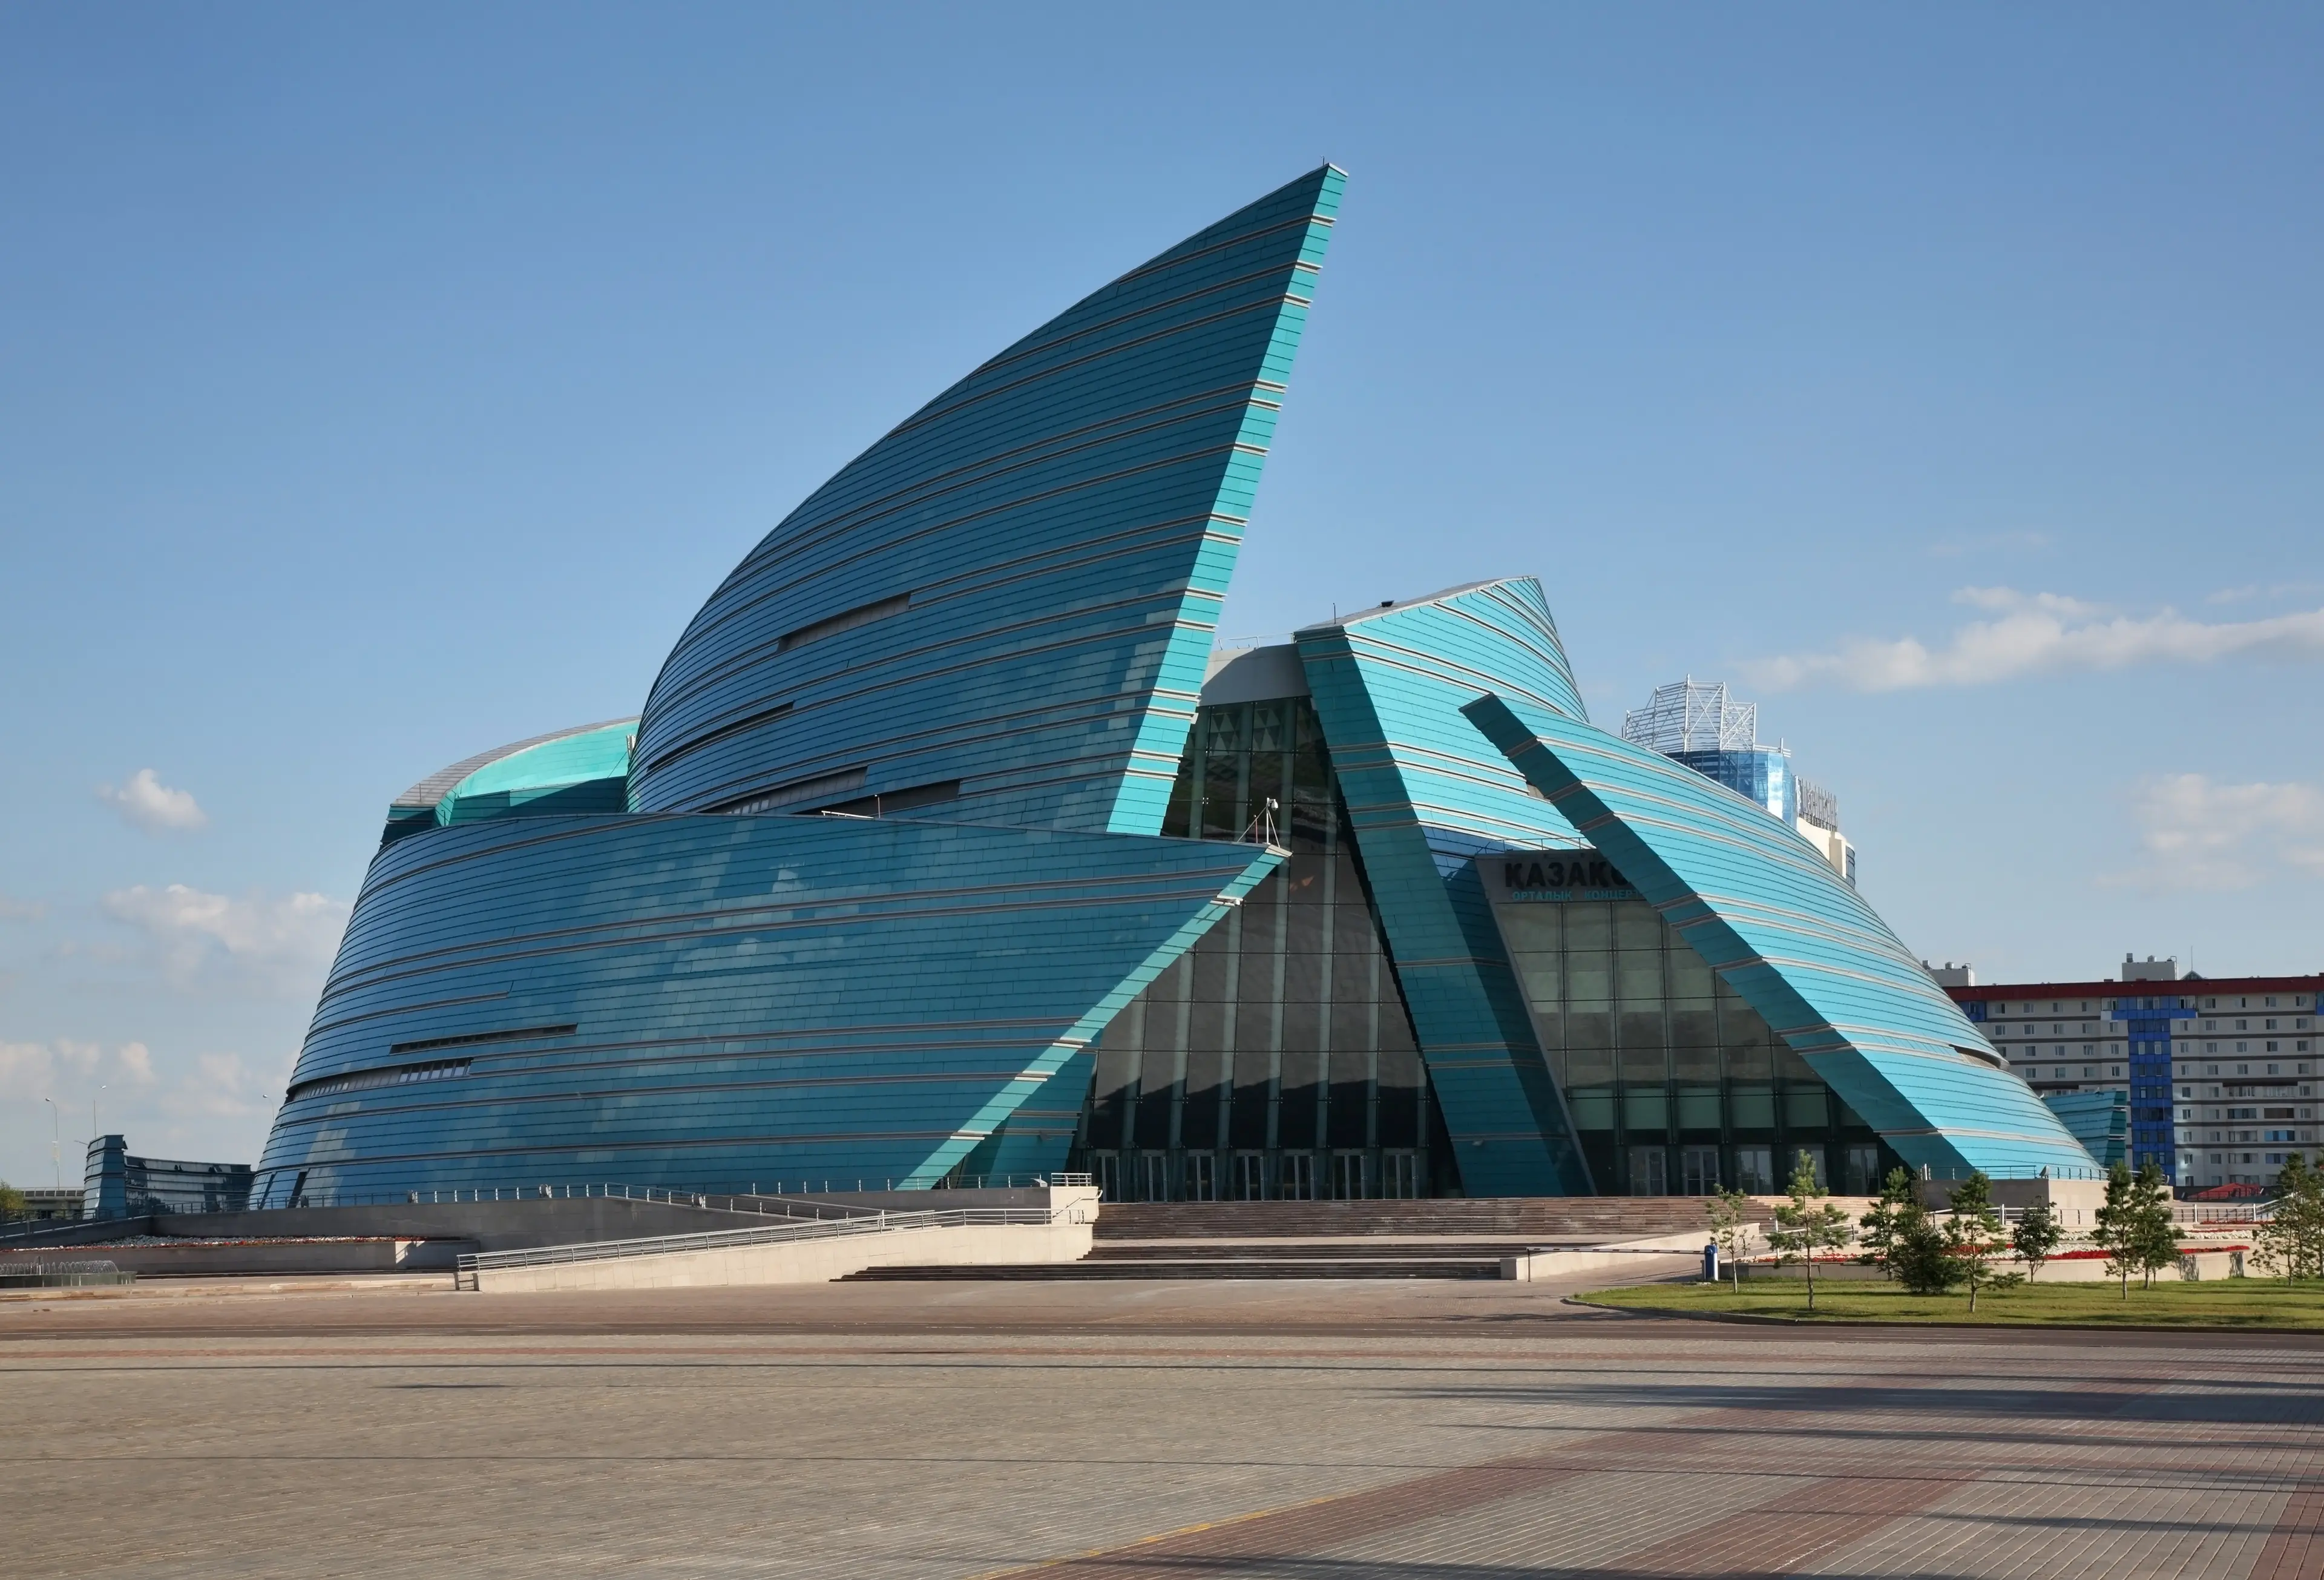 Kazakhstan Central Concert Hall